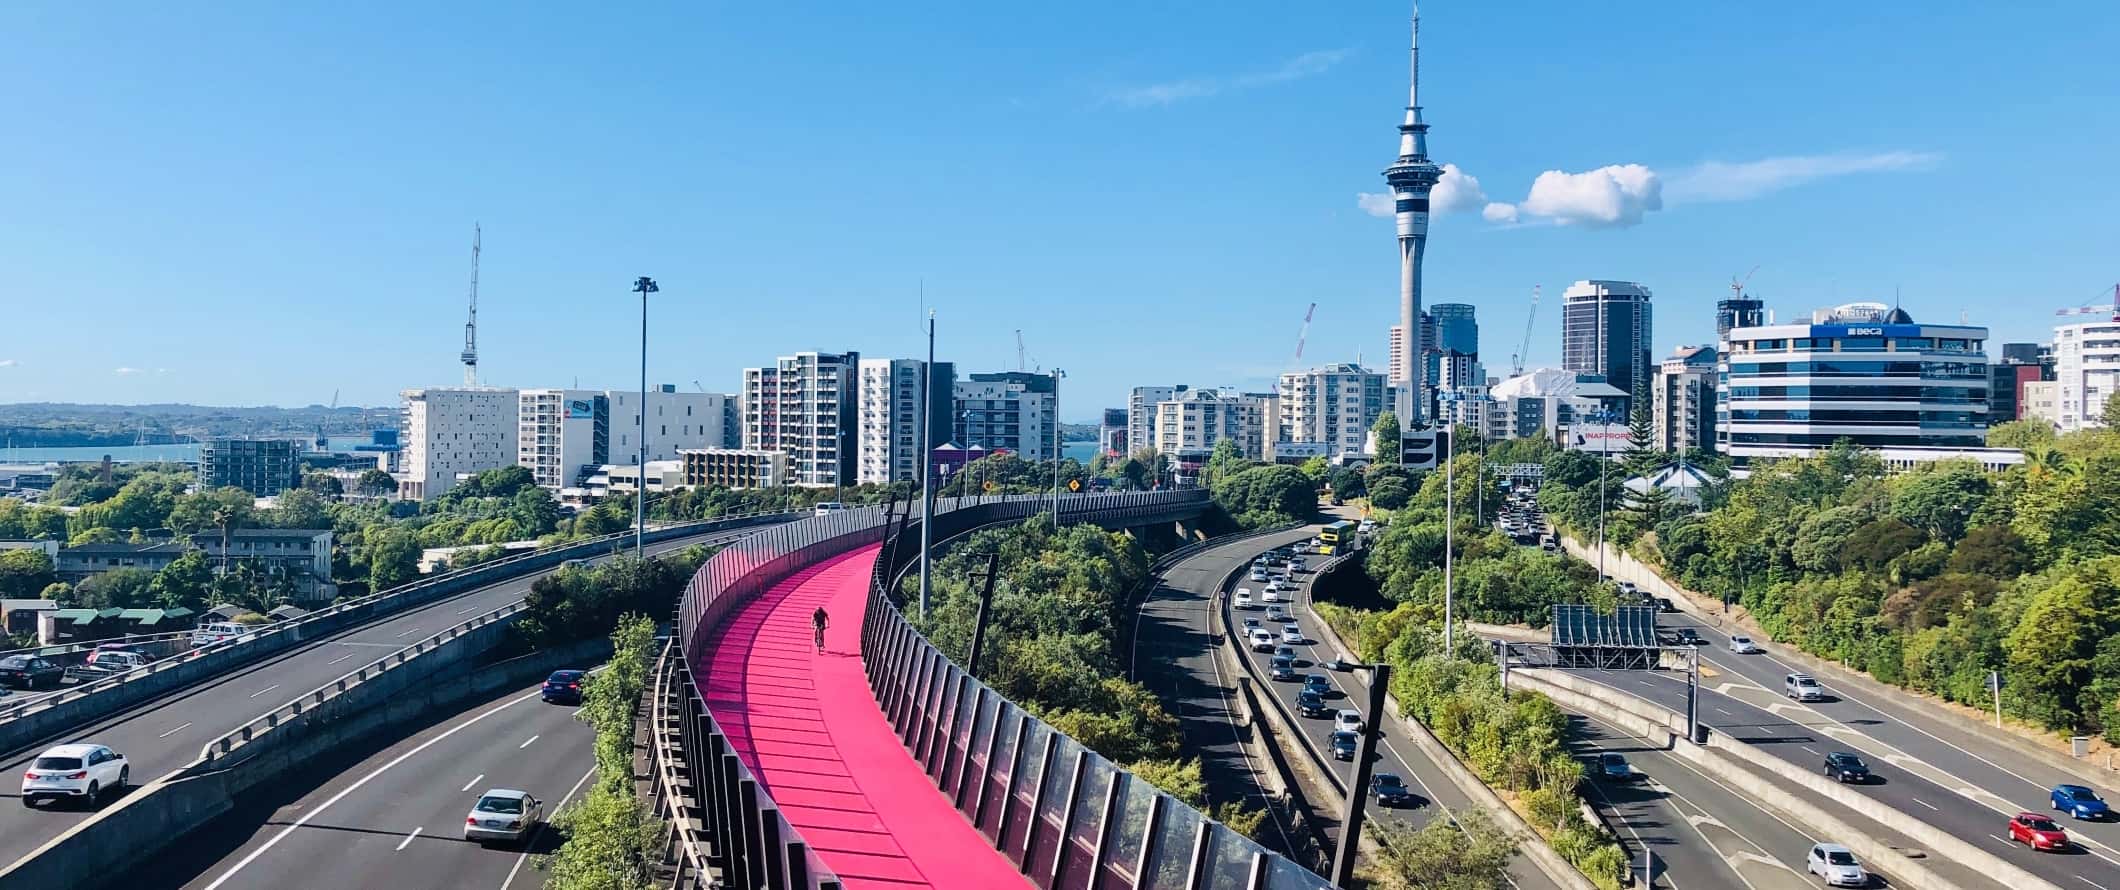 Numerosas rodovias e a ciclovia rosa em Auckland, Nova Zelândia.